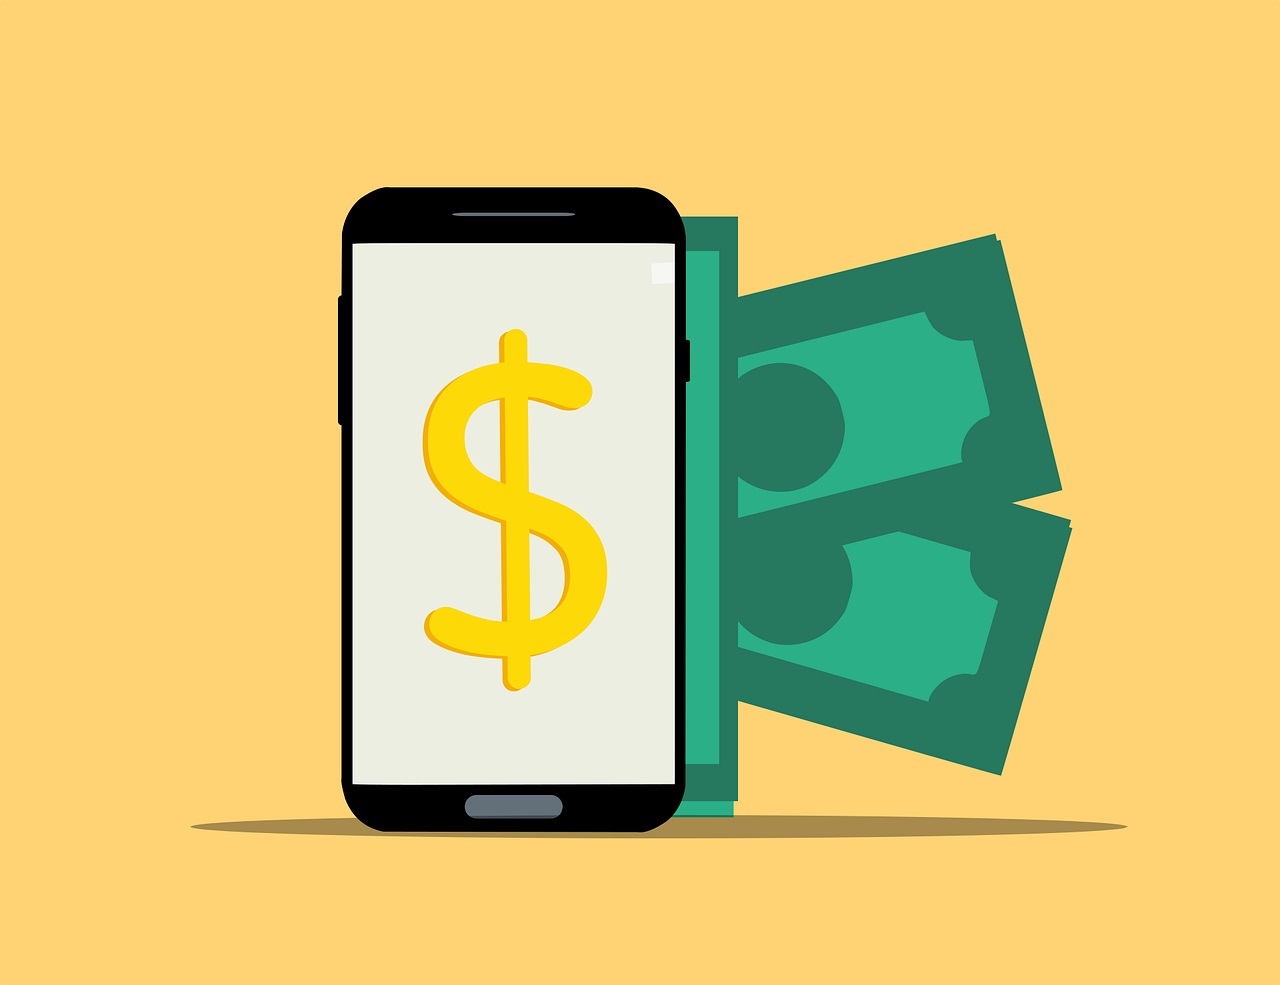 Hướng dẫn sử dụng Mobile Money VinaPhone khi không có data Internet